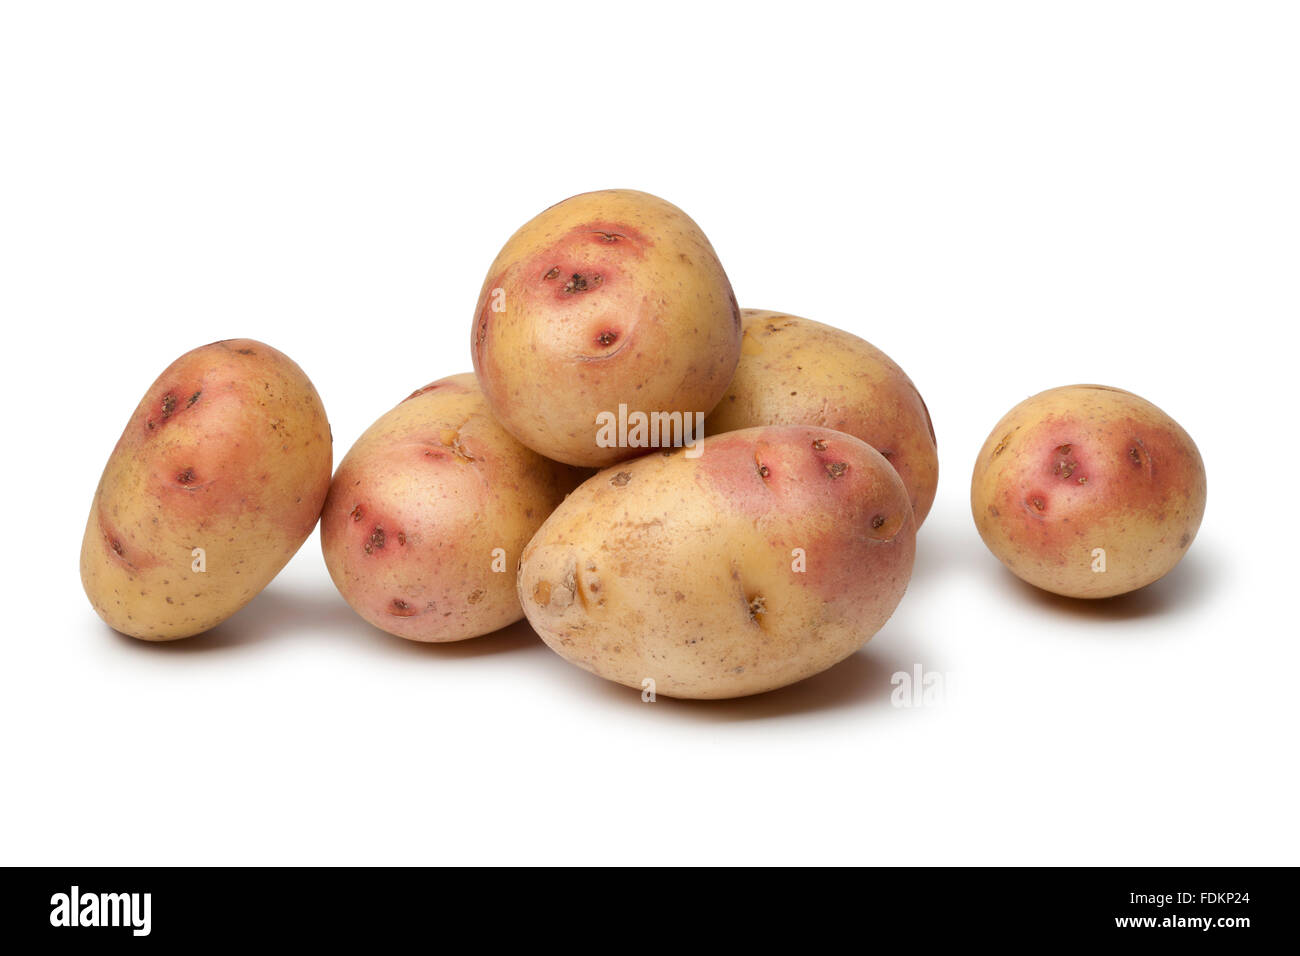 Fresh Carolus potatoes on white background Stock Photo